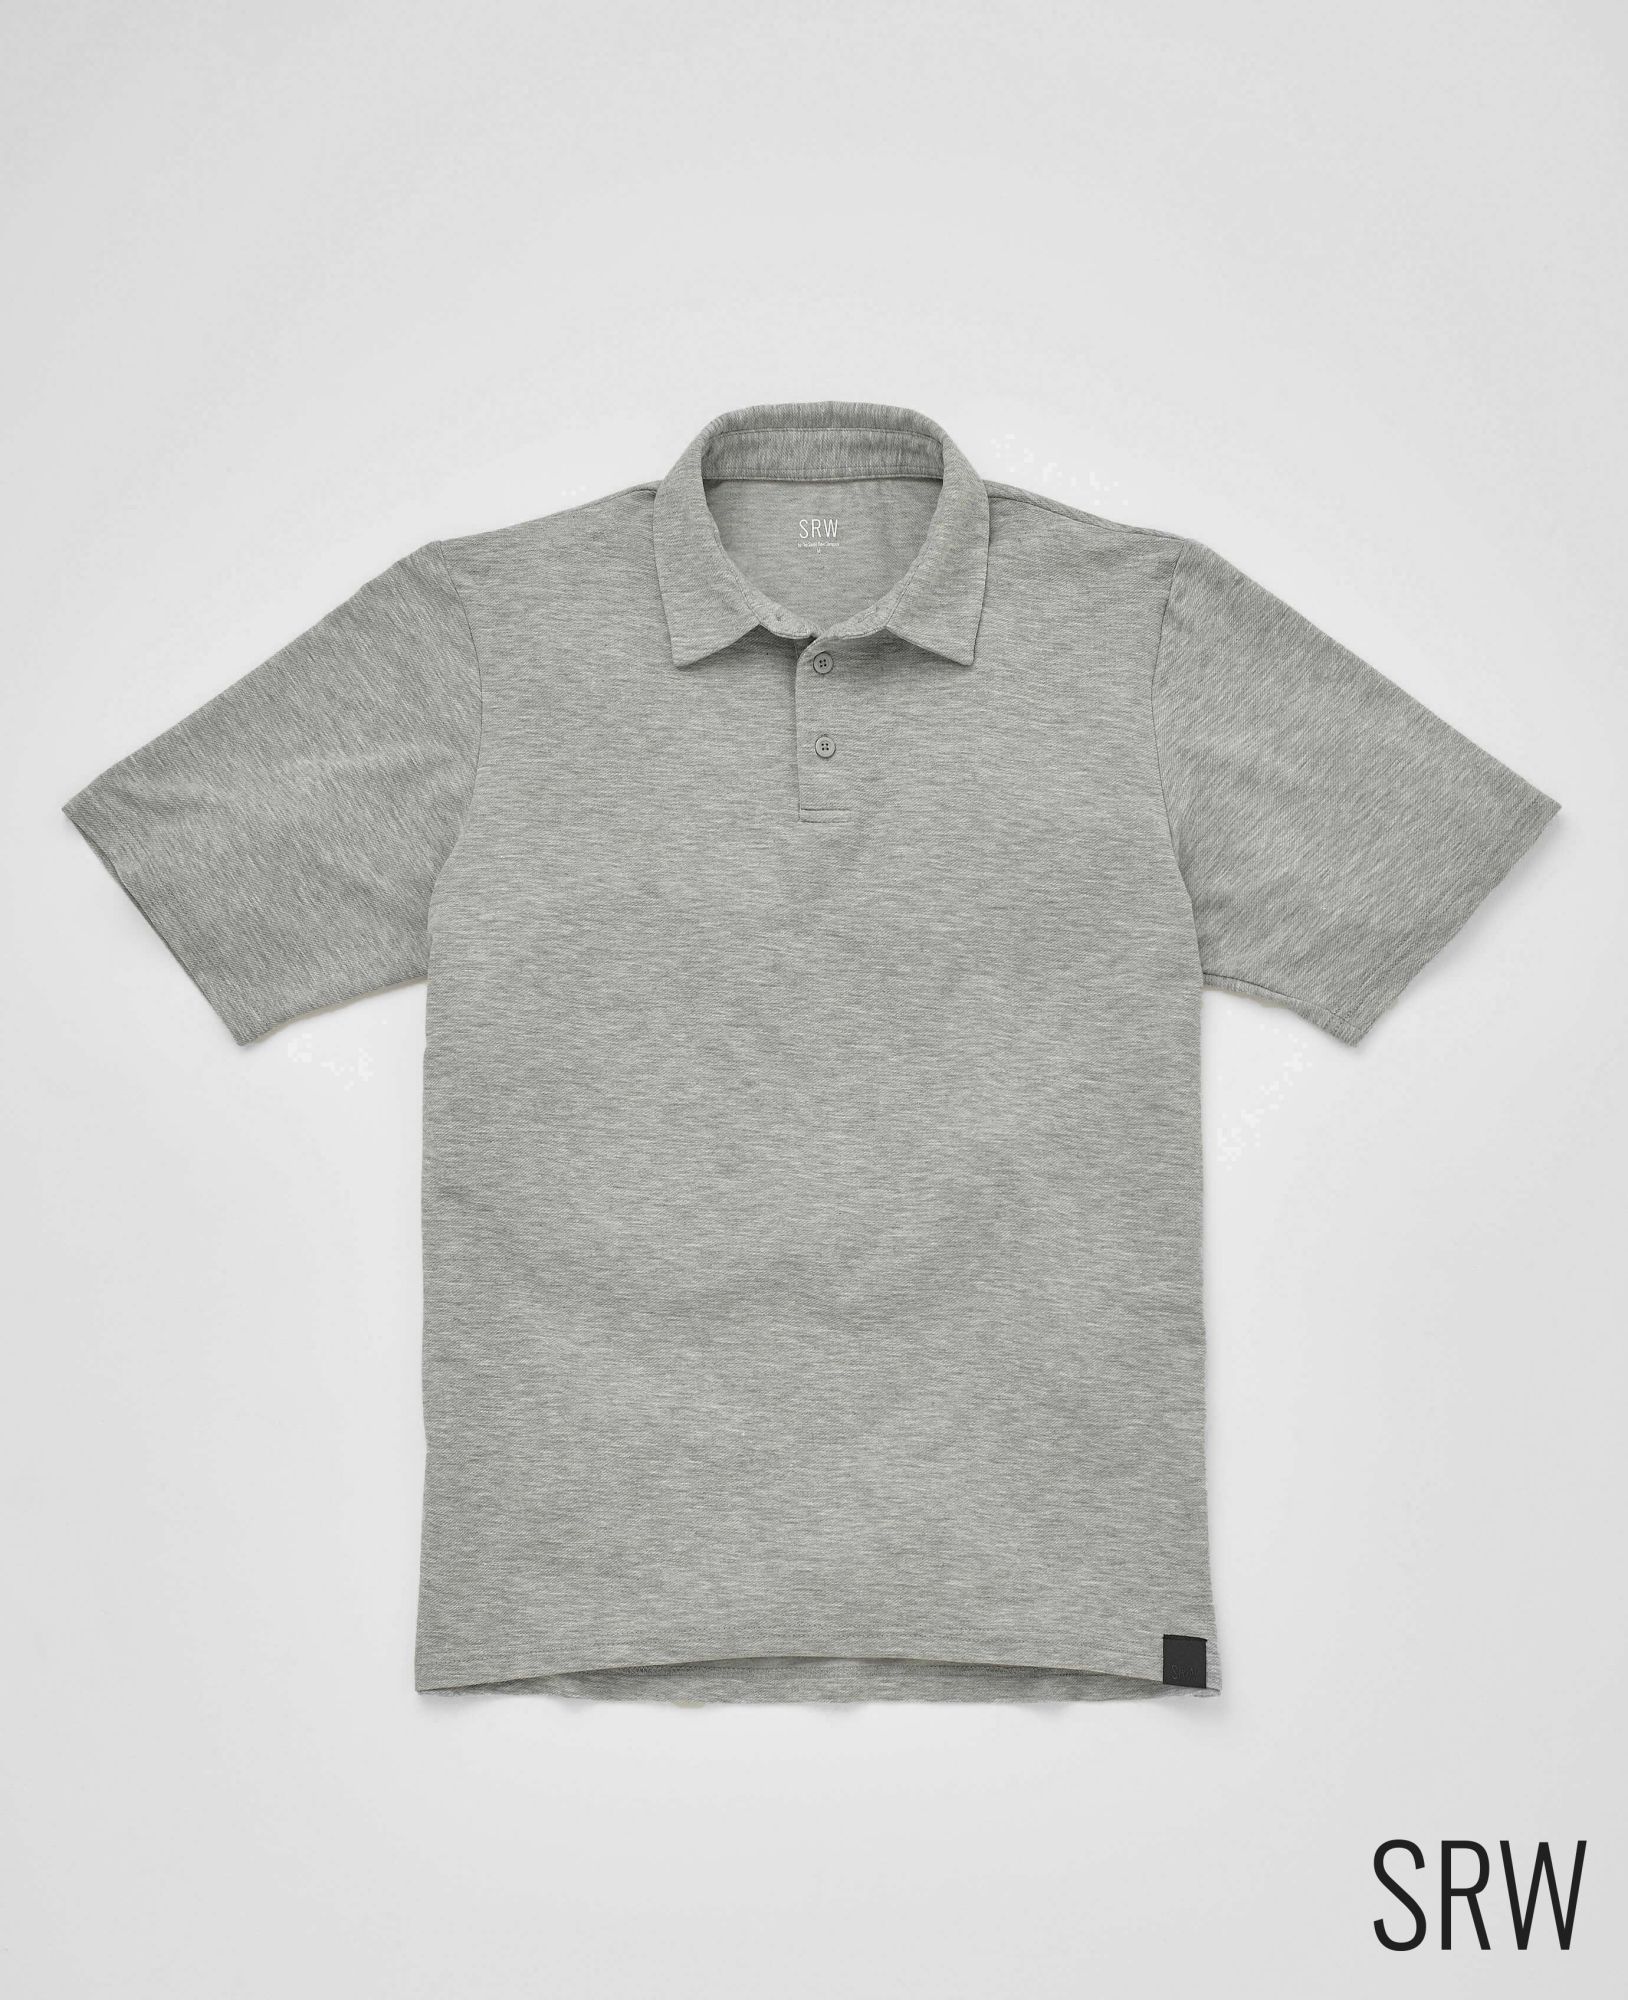 SRW Active Non-Iron Marl Grey Short Sleeve Polo Shirt M